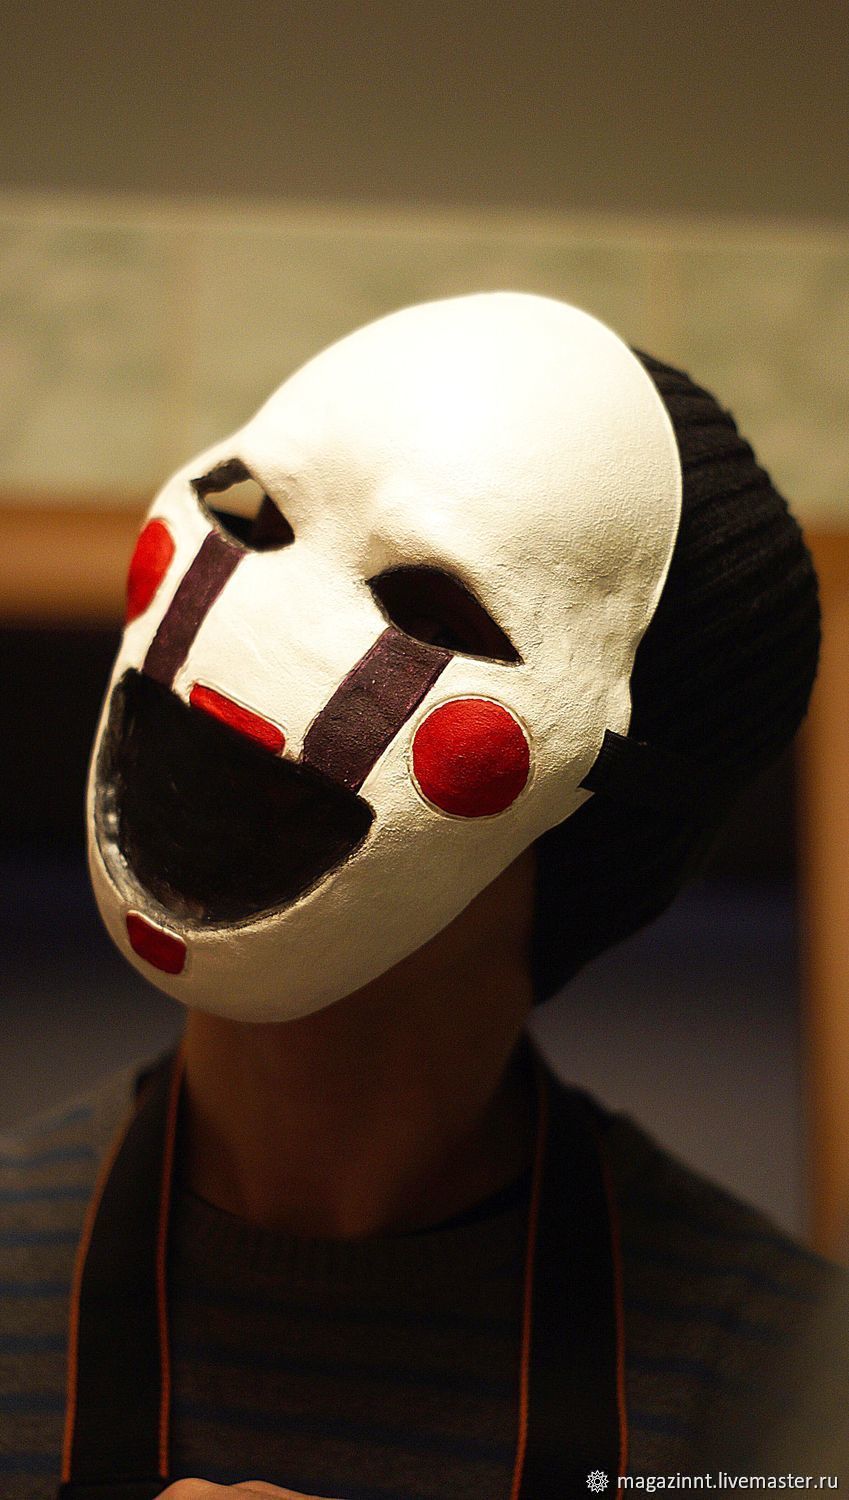 FNAF Puppet Mask, Marionette Mask